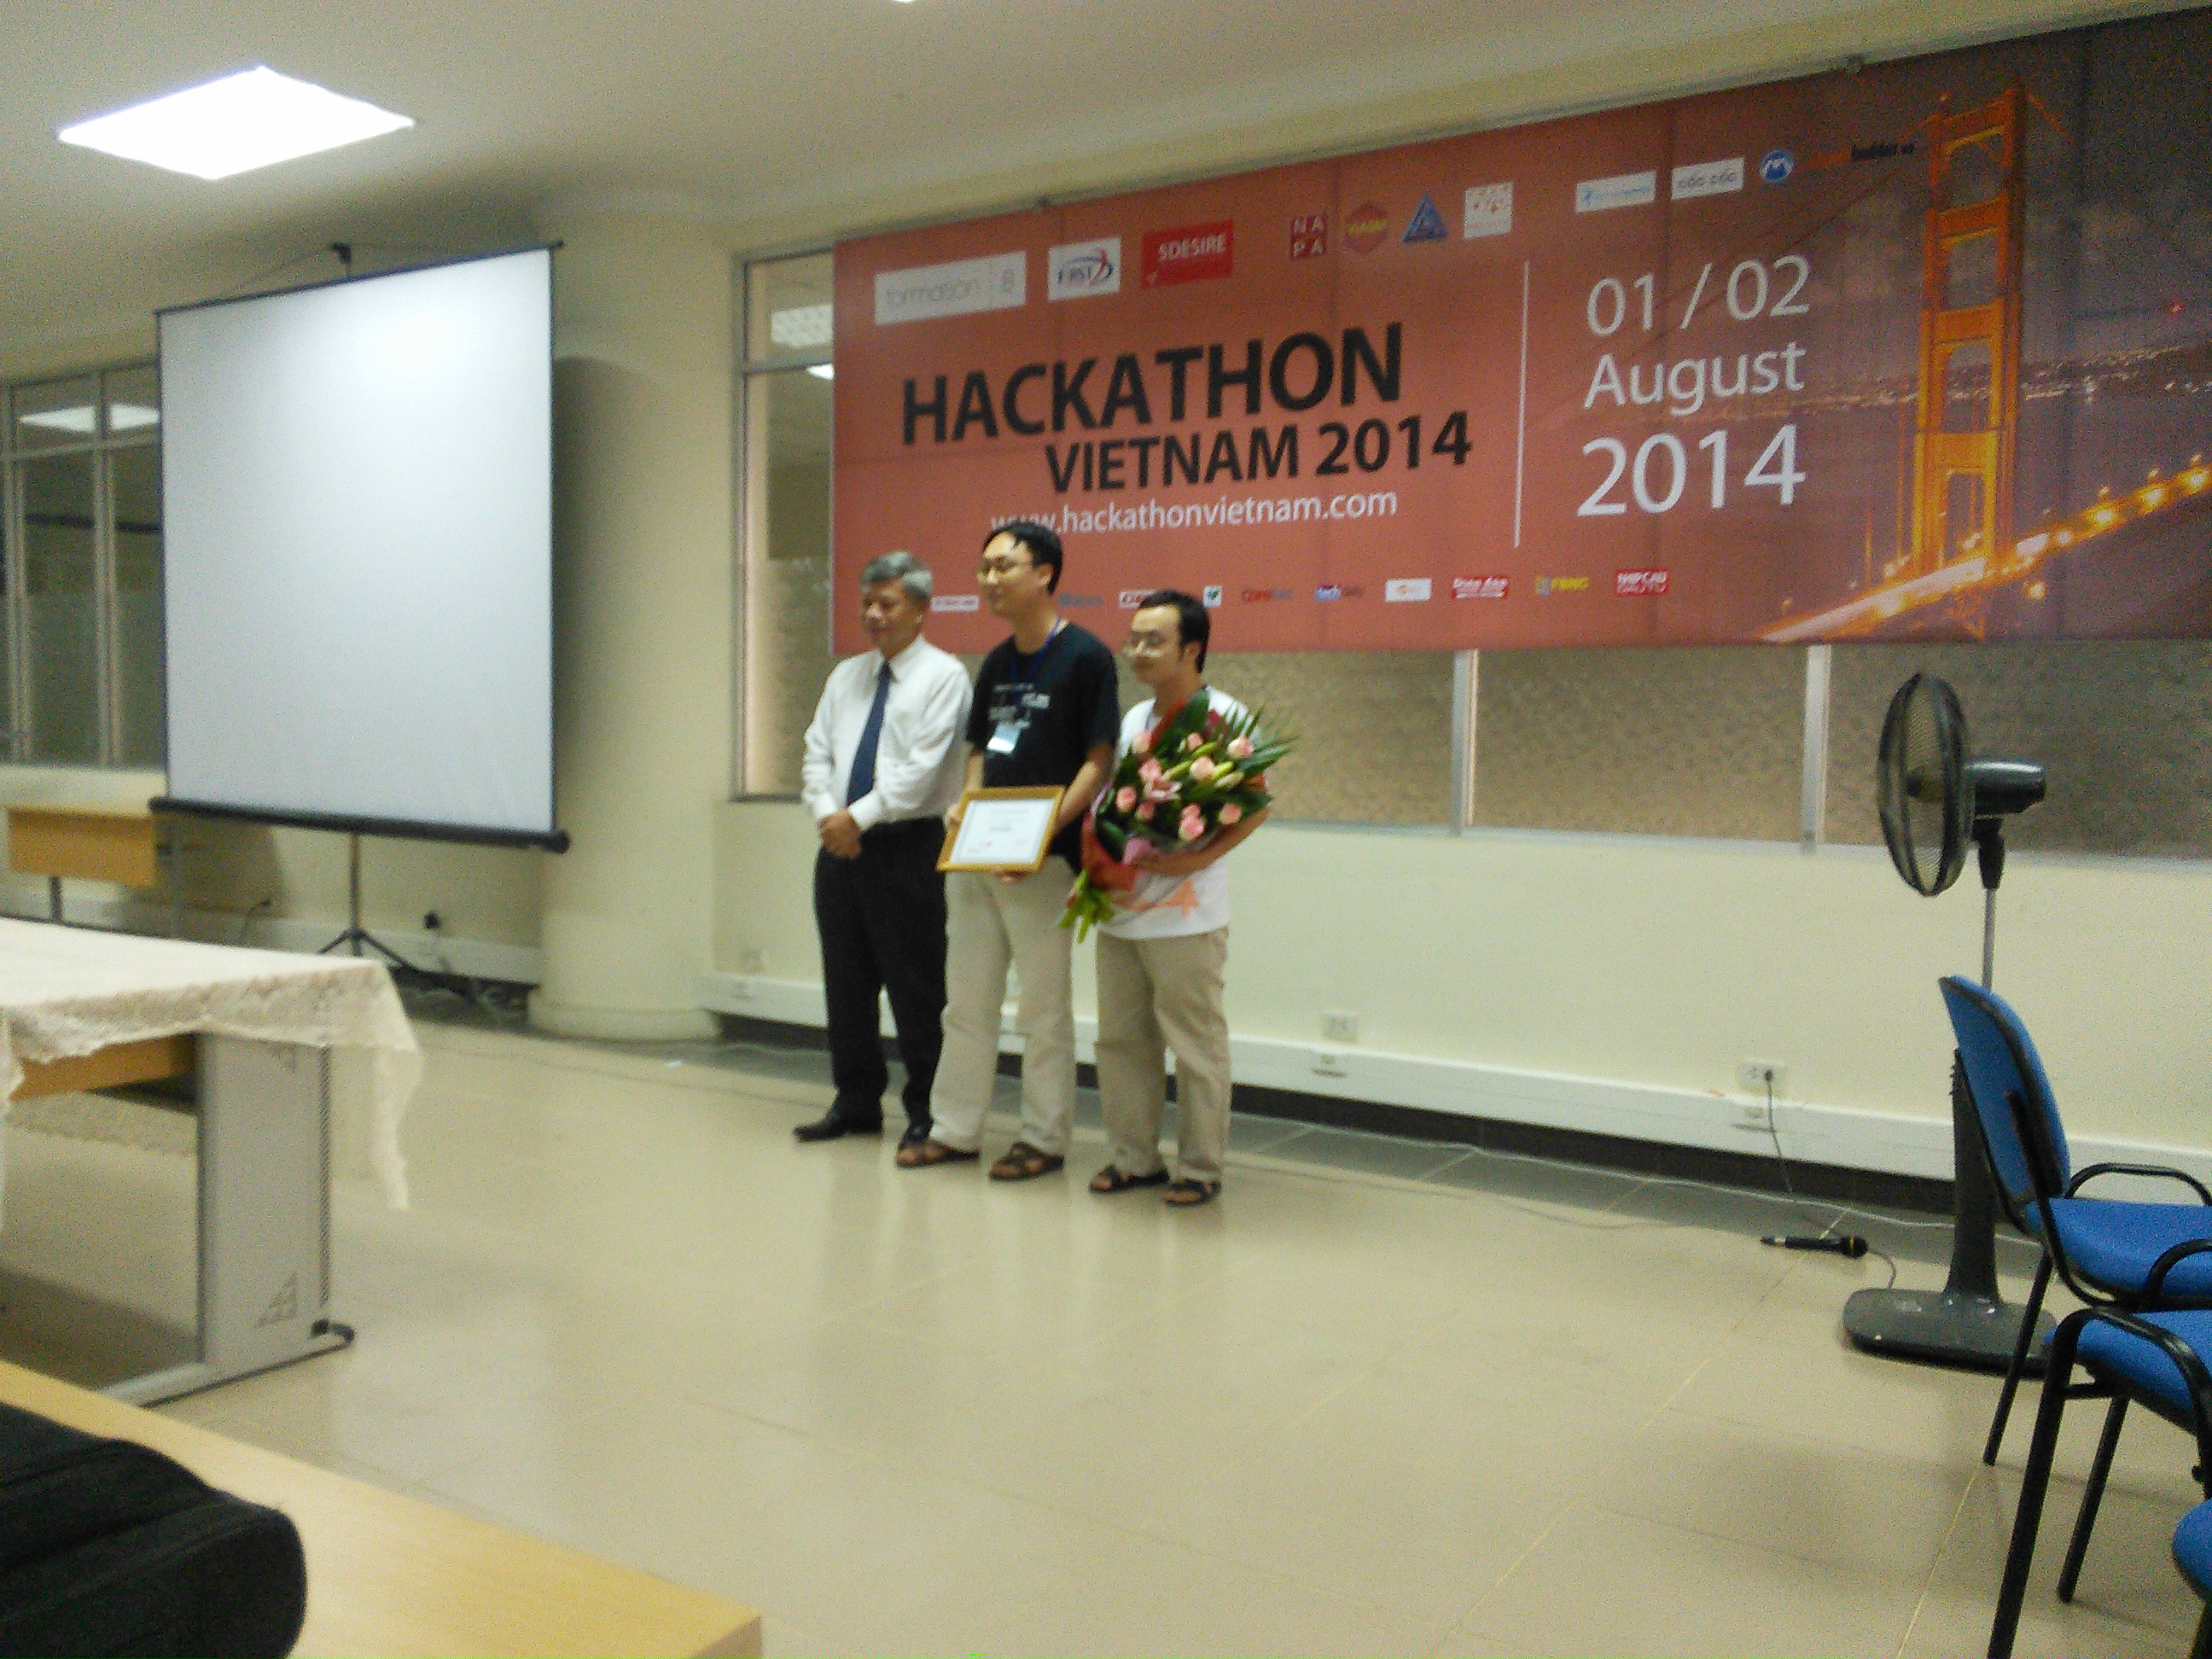 KTS phần mềm Nguyễn Đức Tâm giành giải nhất Hackathon Vietnam 2014